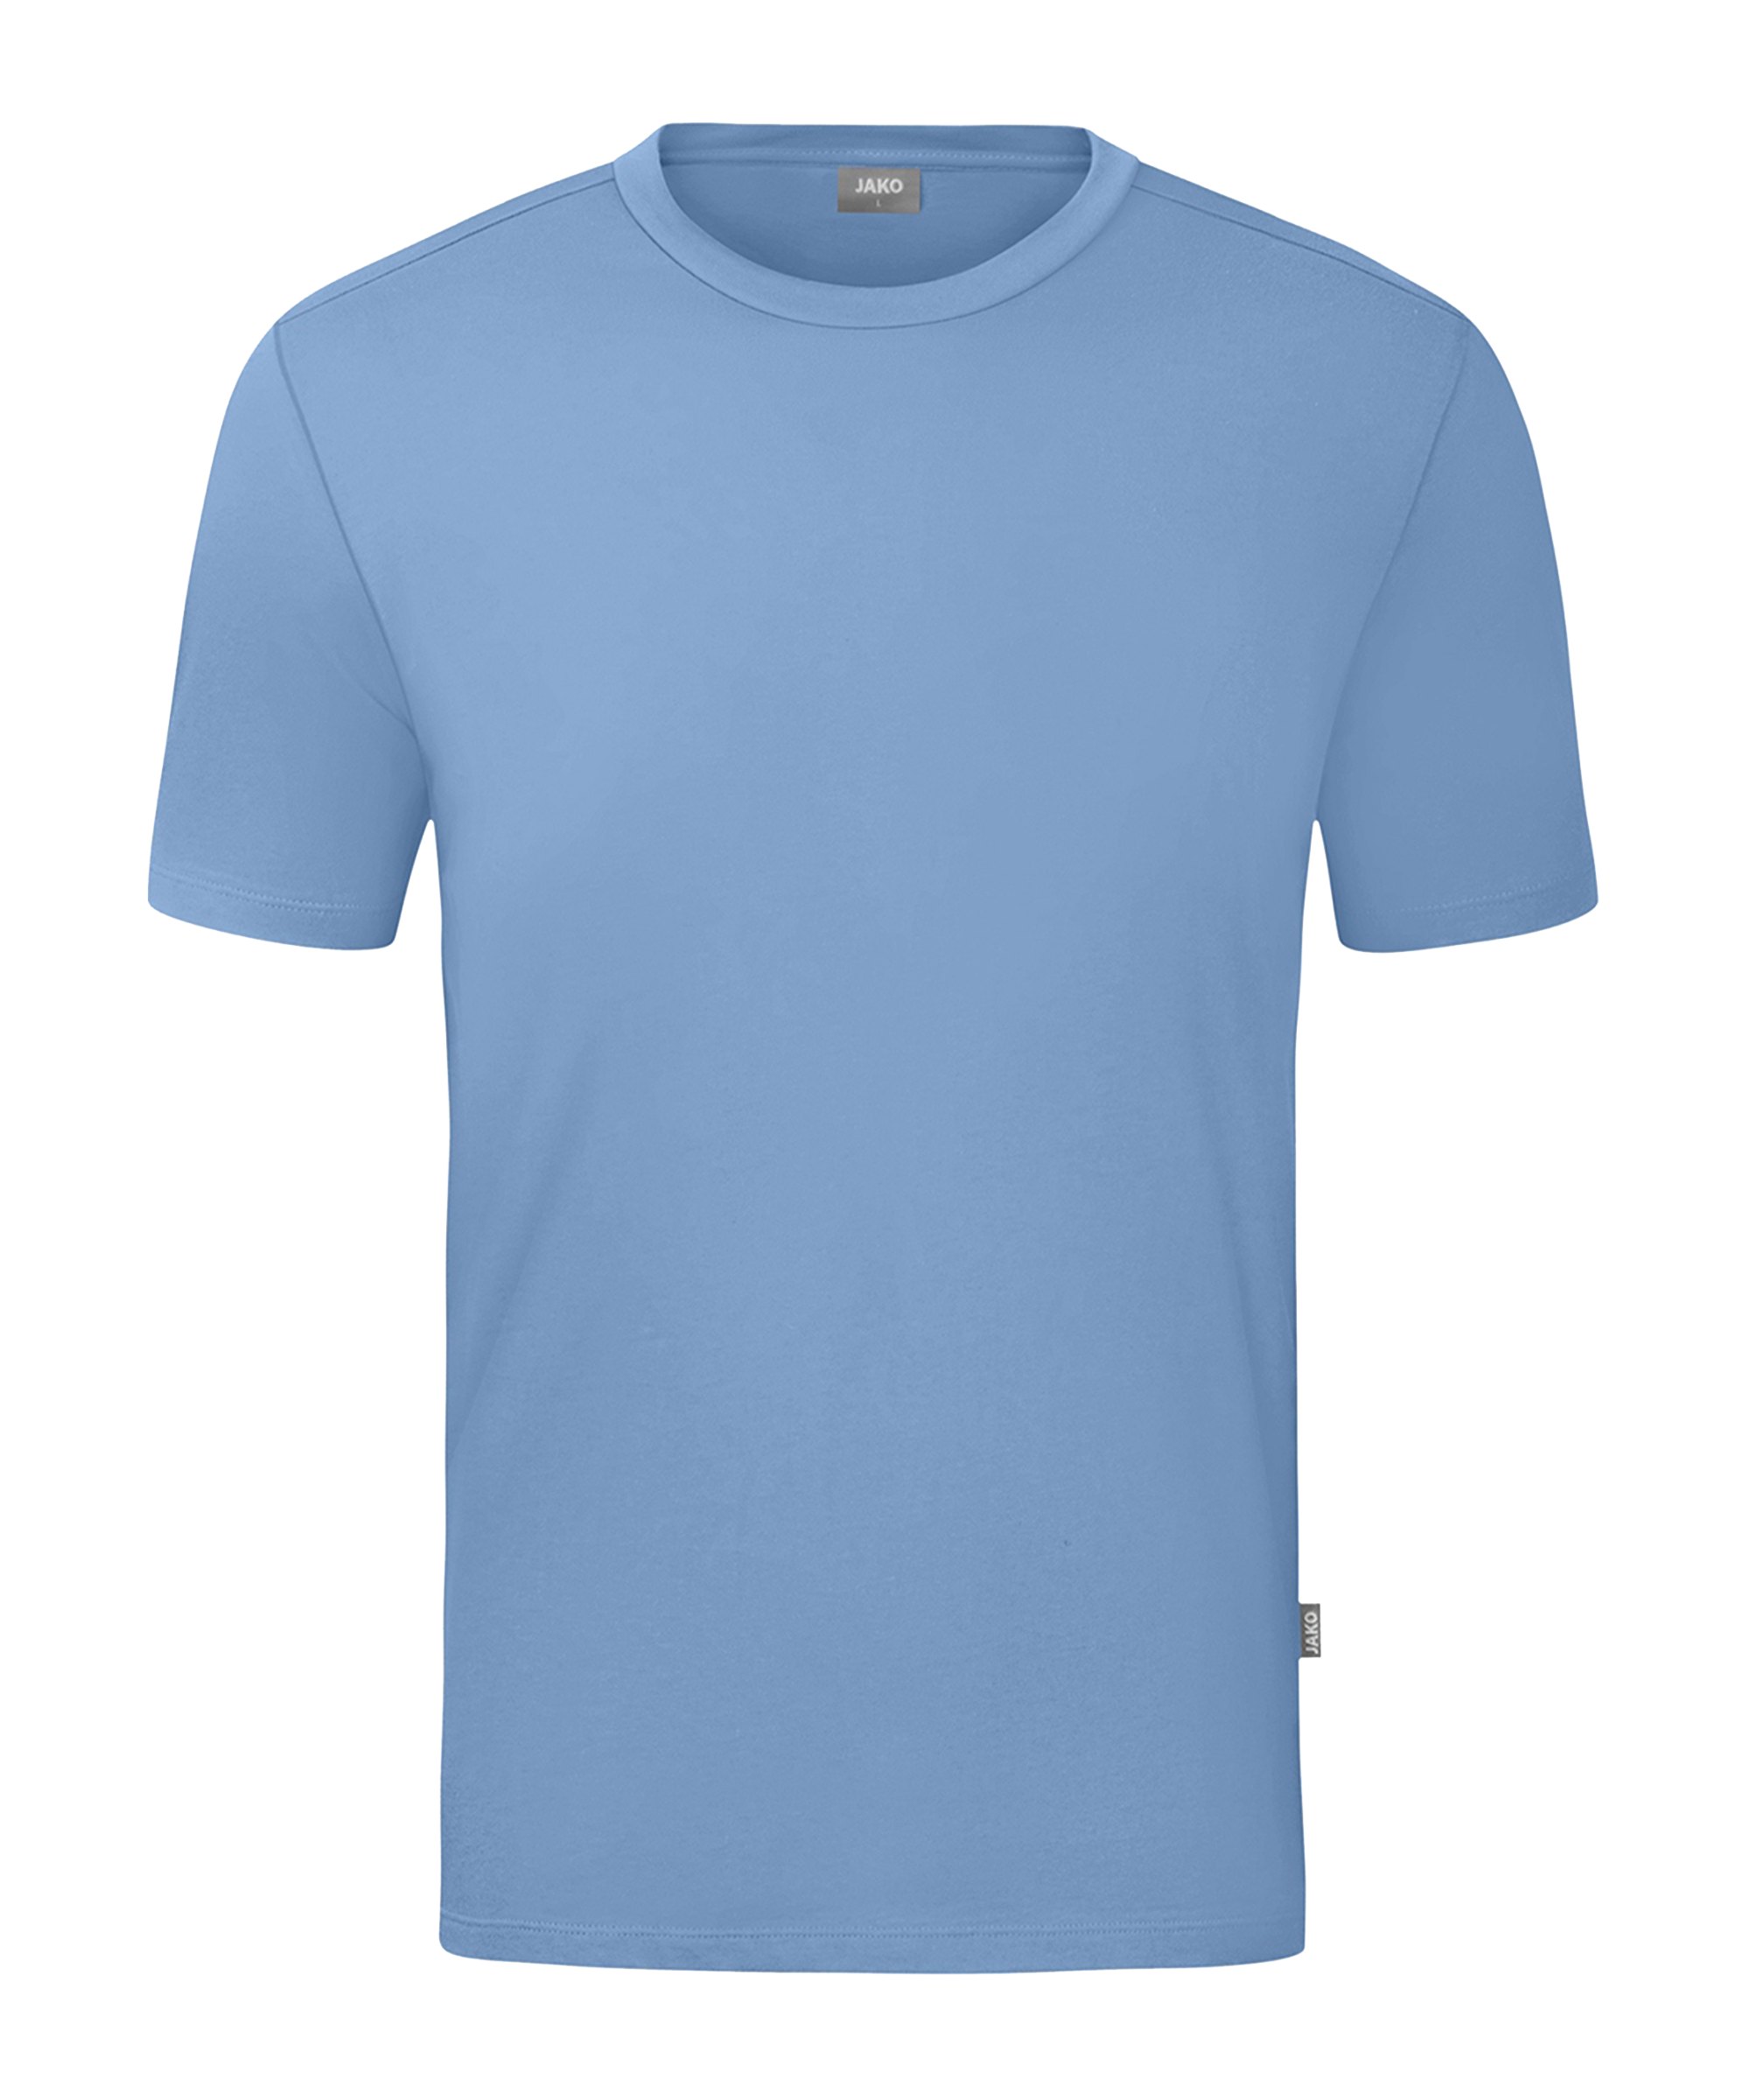 JAKO Organic T-Shirt Kids Blau F460 - blau